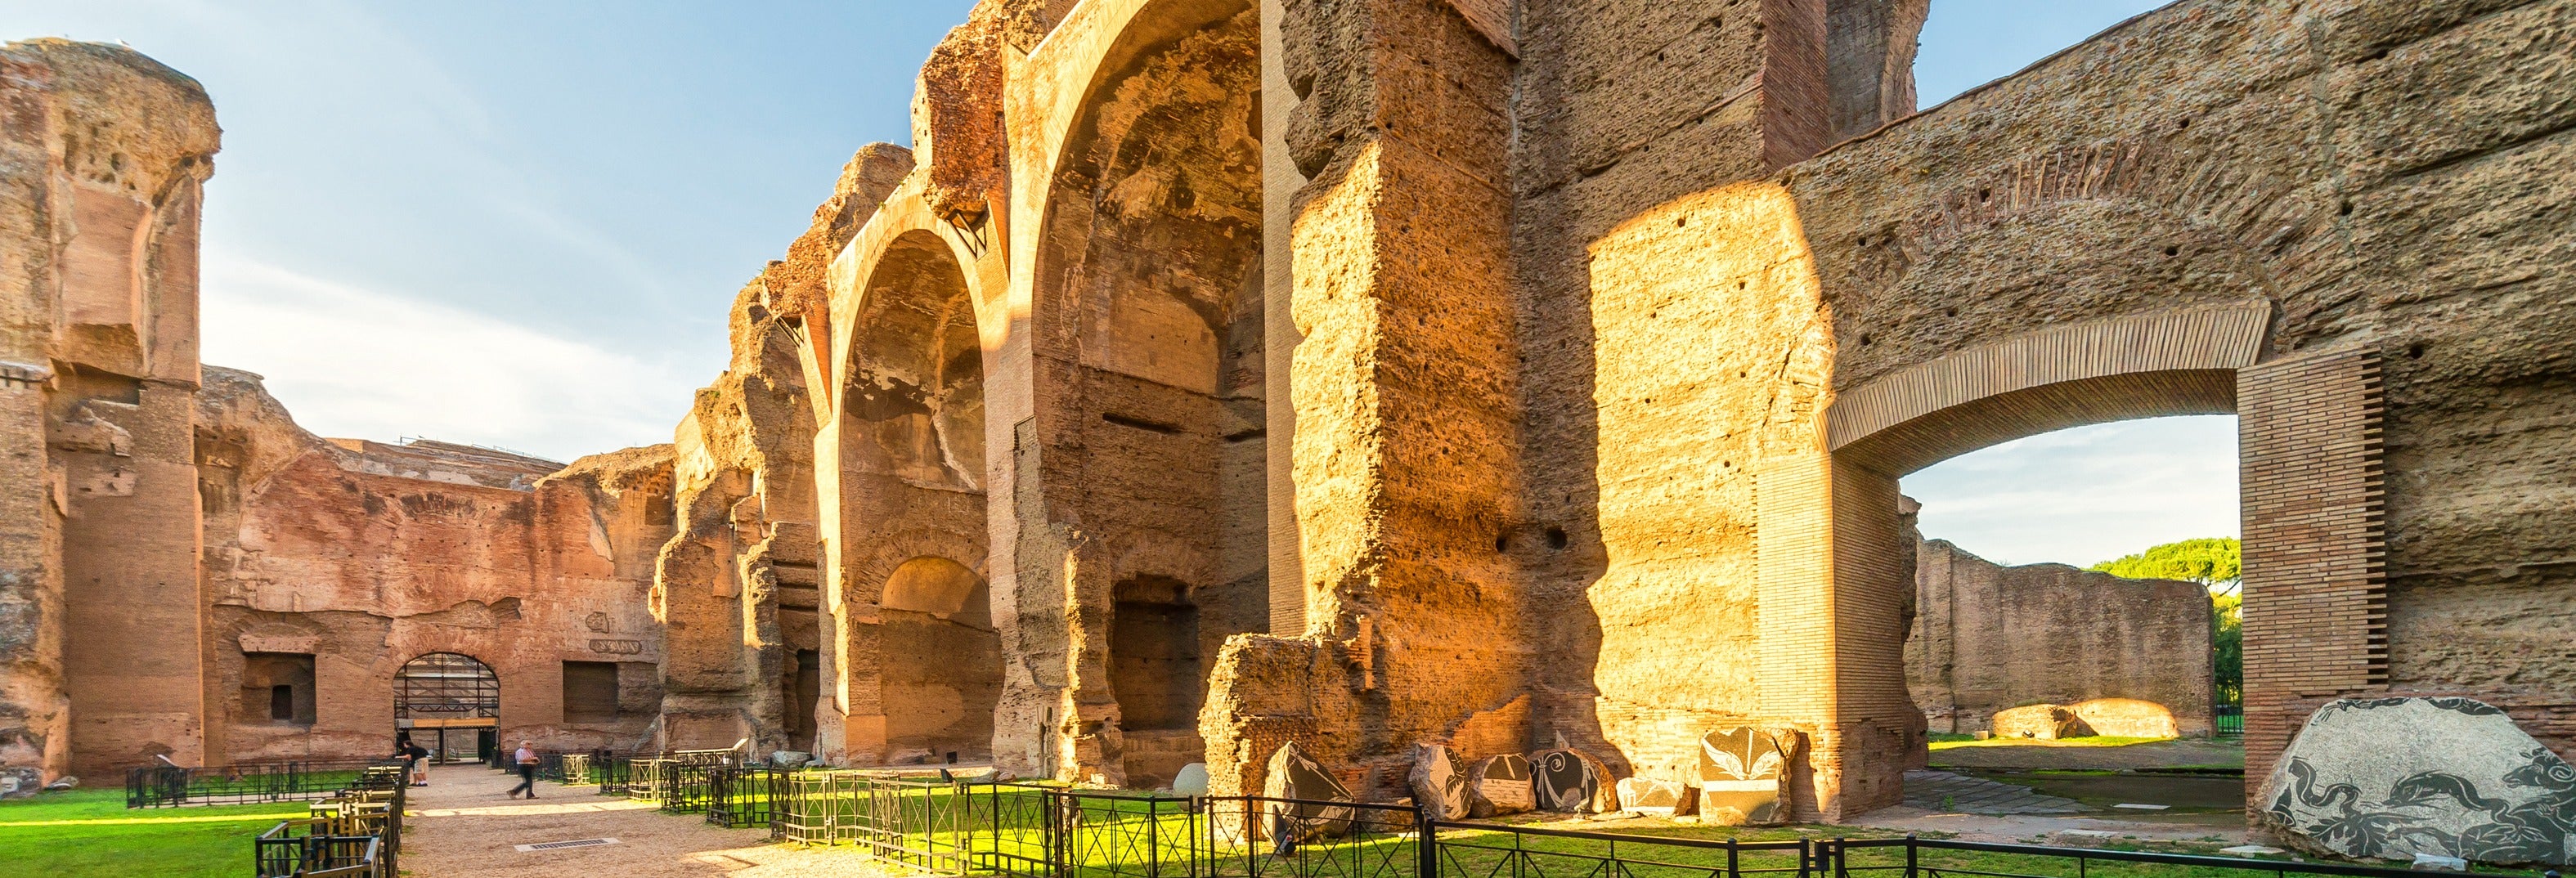 Visita guiada pelas termas de Caracalla